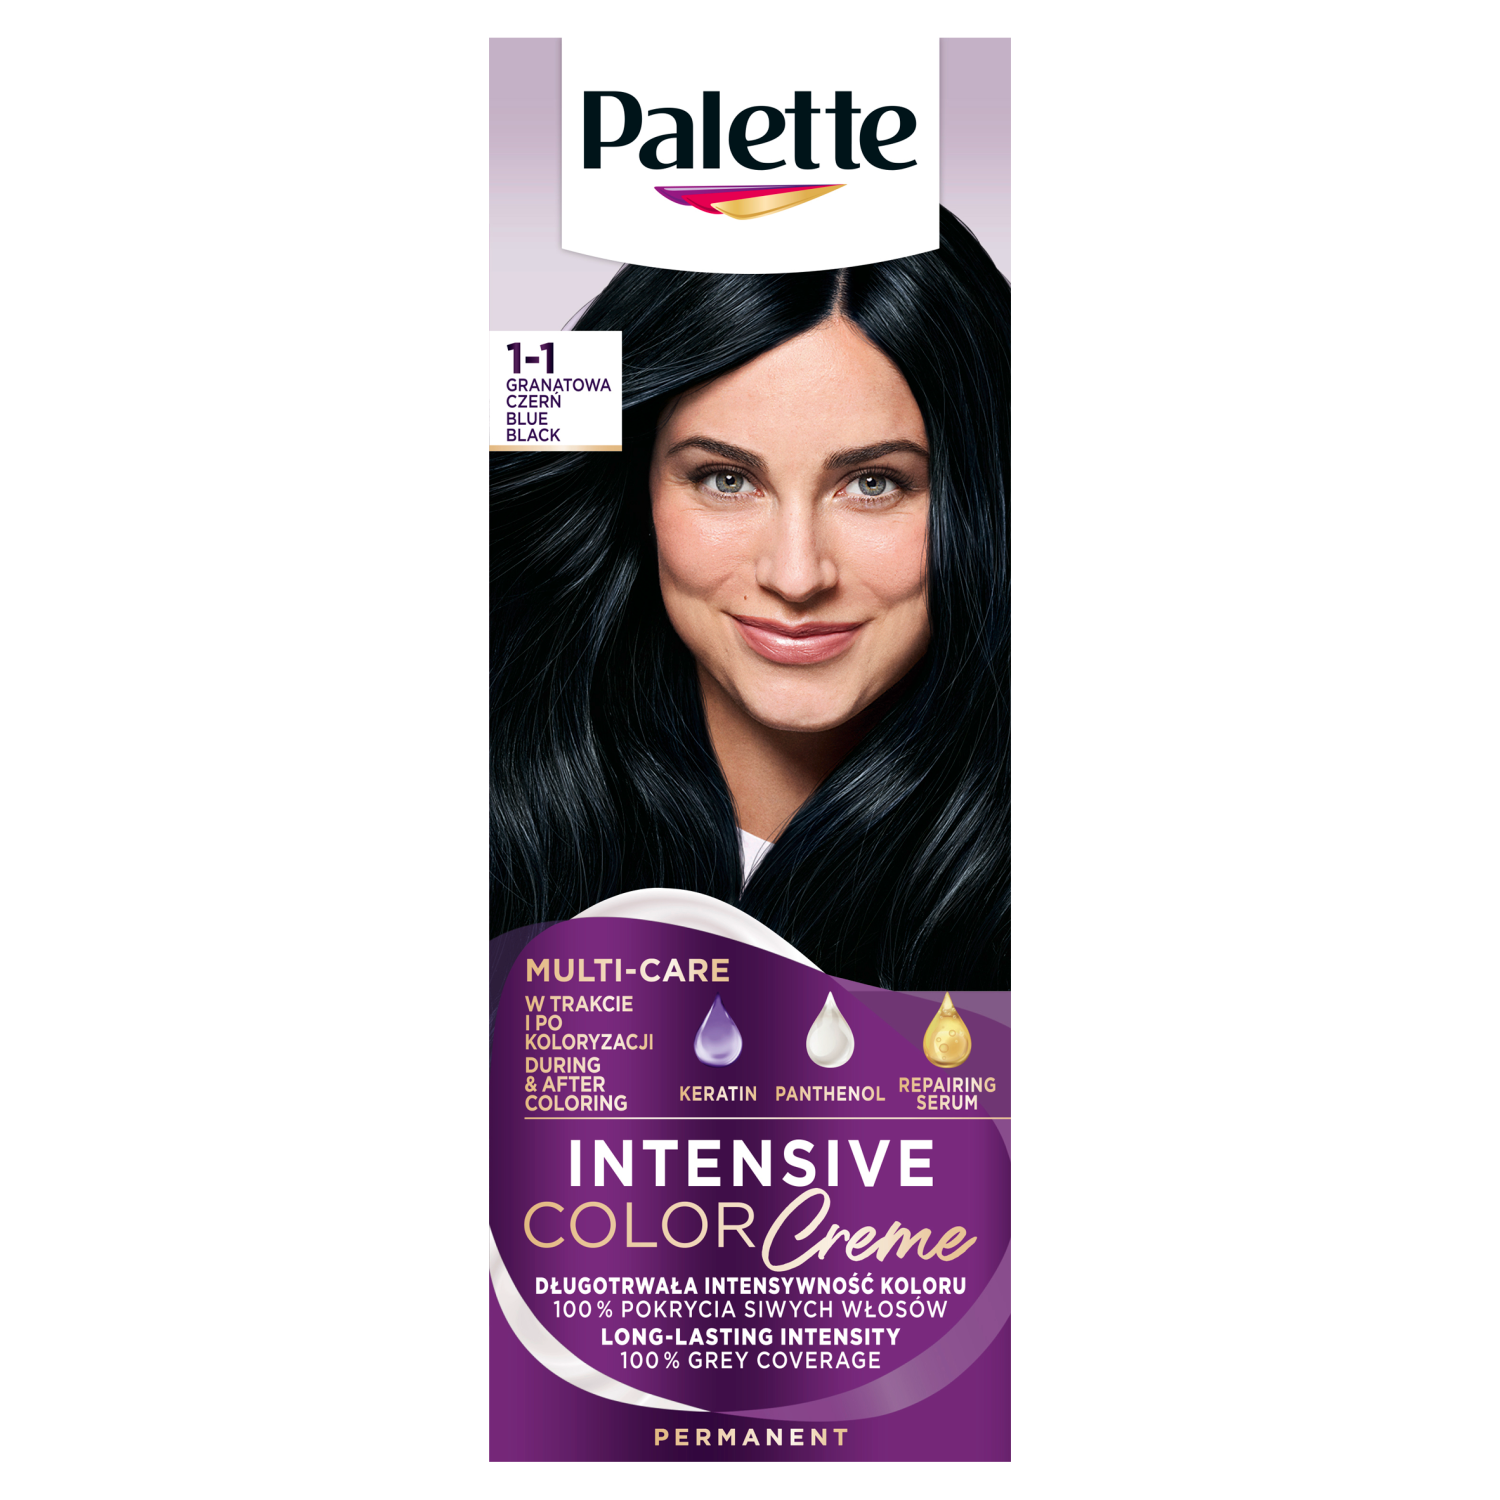 Palette Intensive Color Creme крем-краска для волос 1-1 (с1) темно-синий черный, 1 упаковка